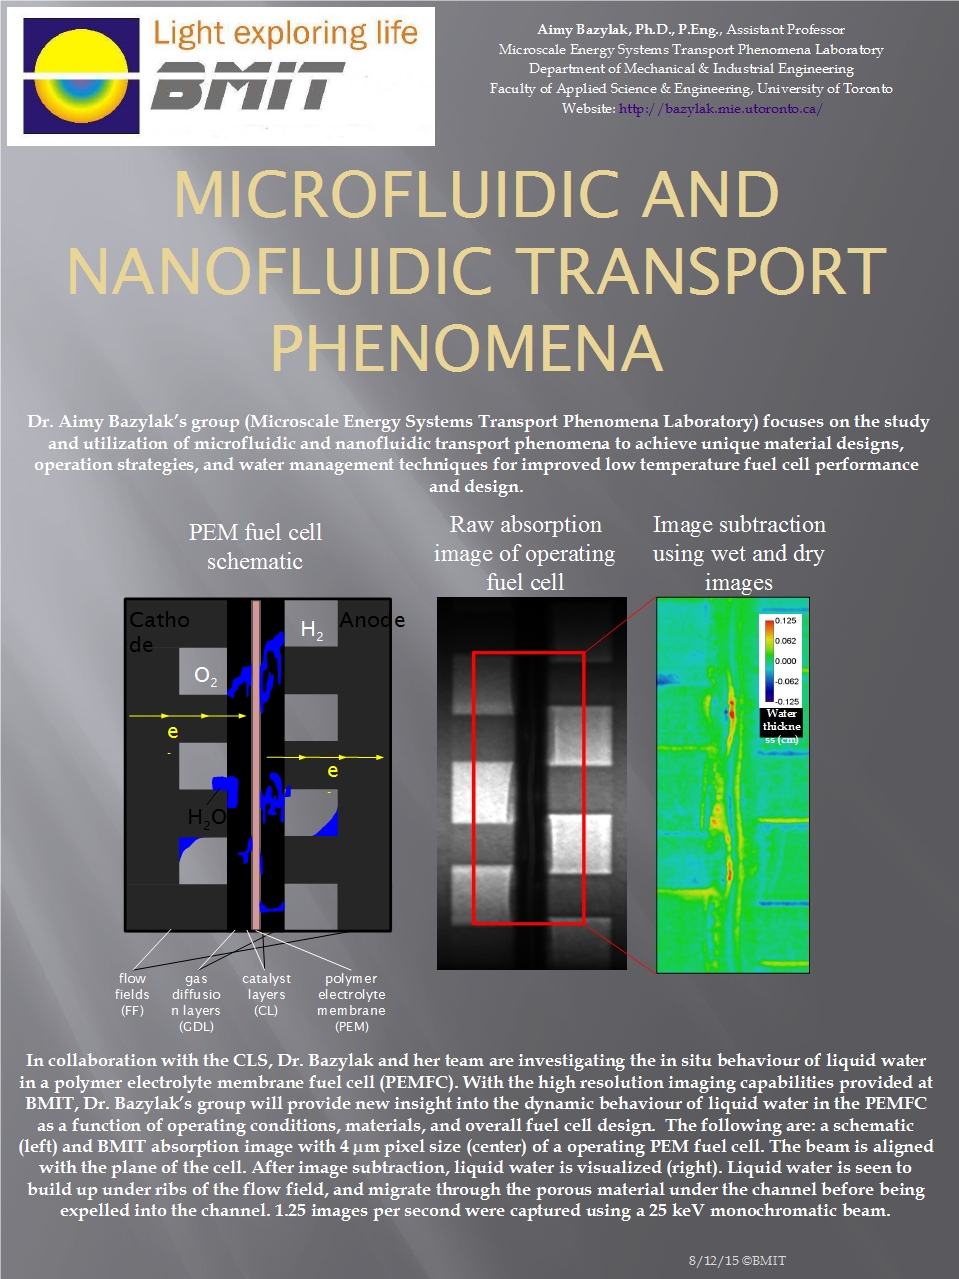 Microfluidic and Nanofluidic Transport Phenomena Image